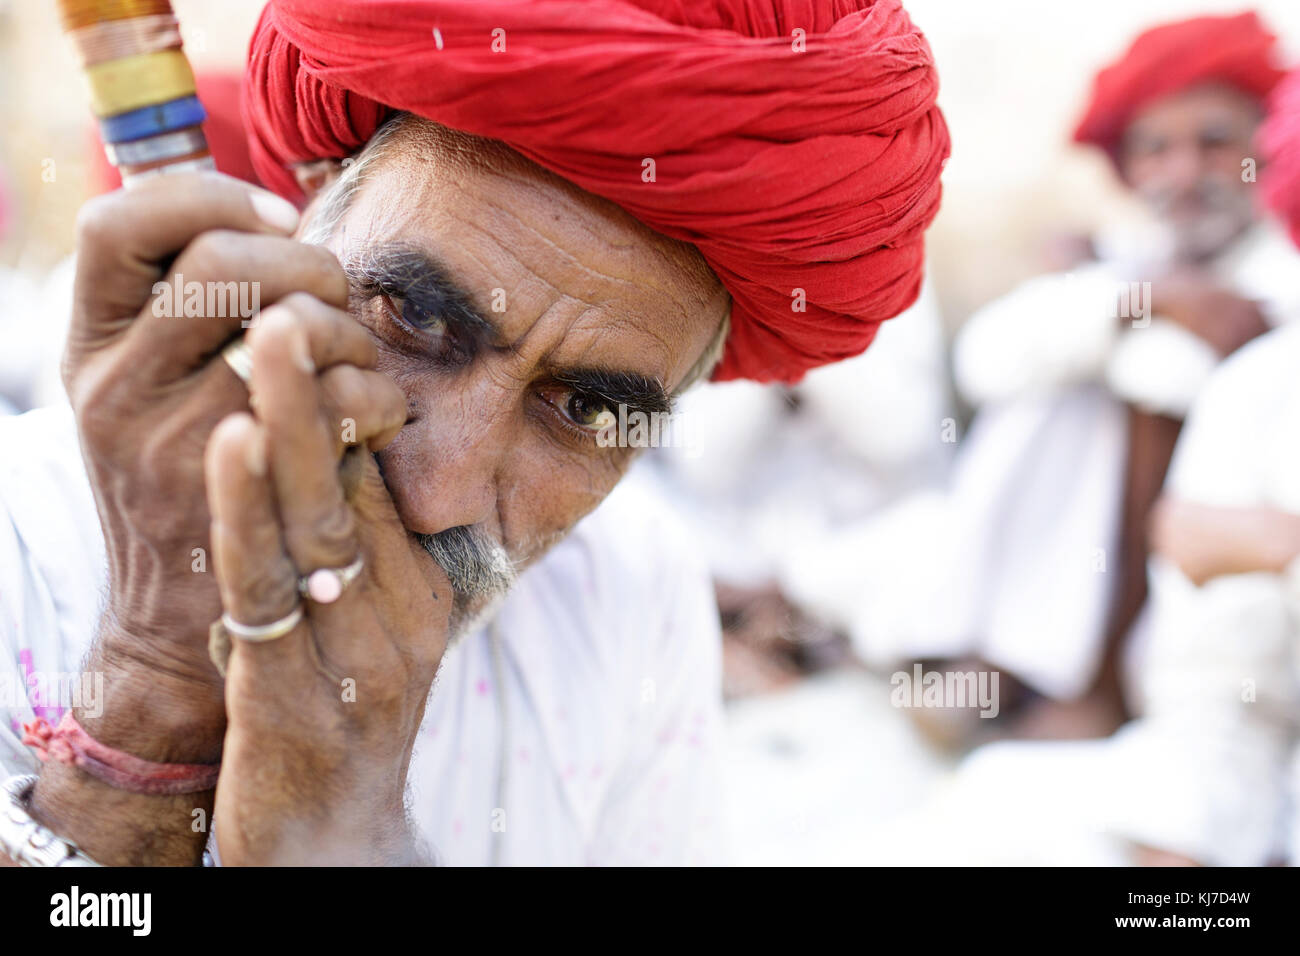 Member of ethnic minority - elder Rabari man in red turban smoking clay pipe. Photo taken at countryside near Jodhpur, Rajasthan, India. Stock Photo